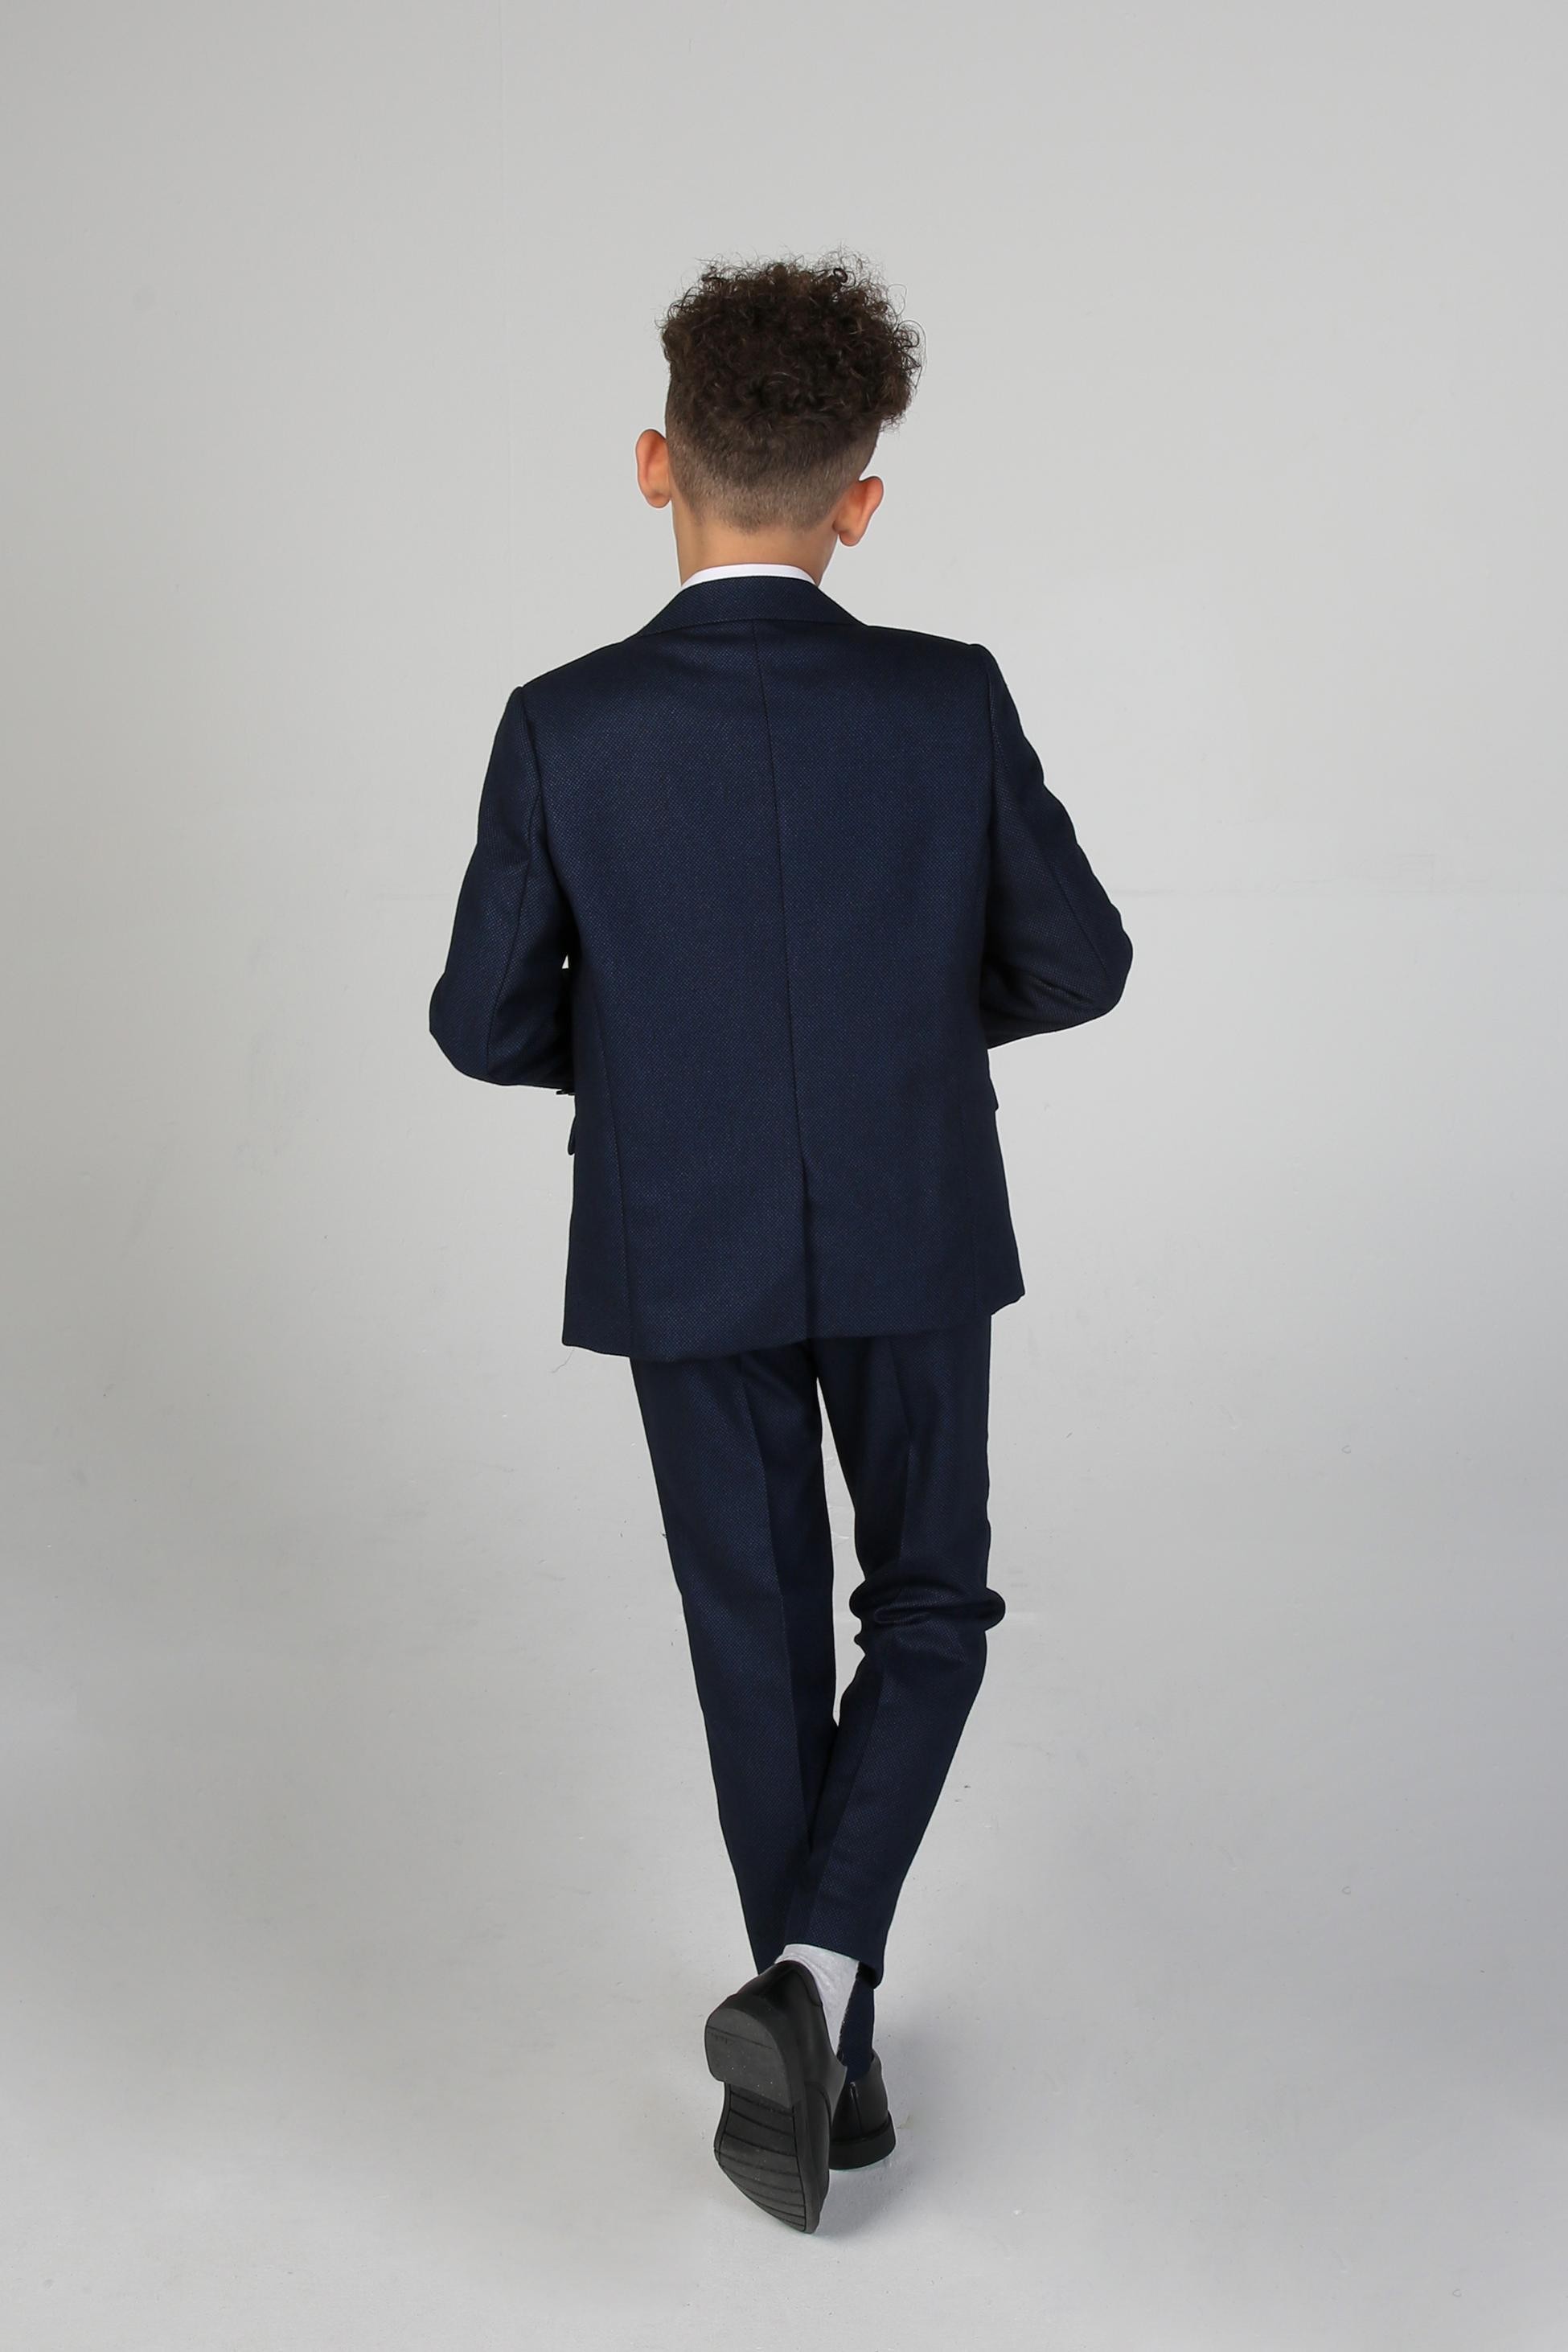 Festliche Strukturierter Anzug Set für Jungen